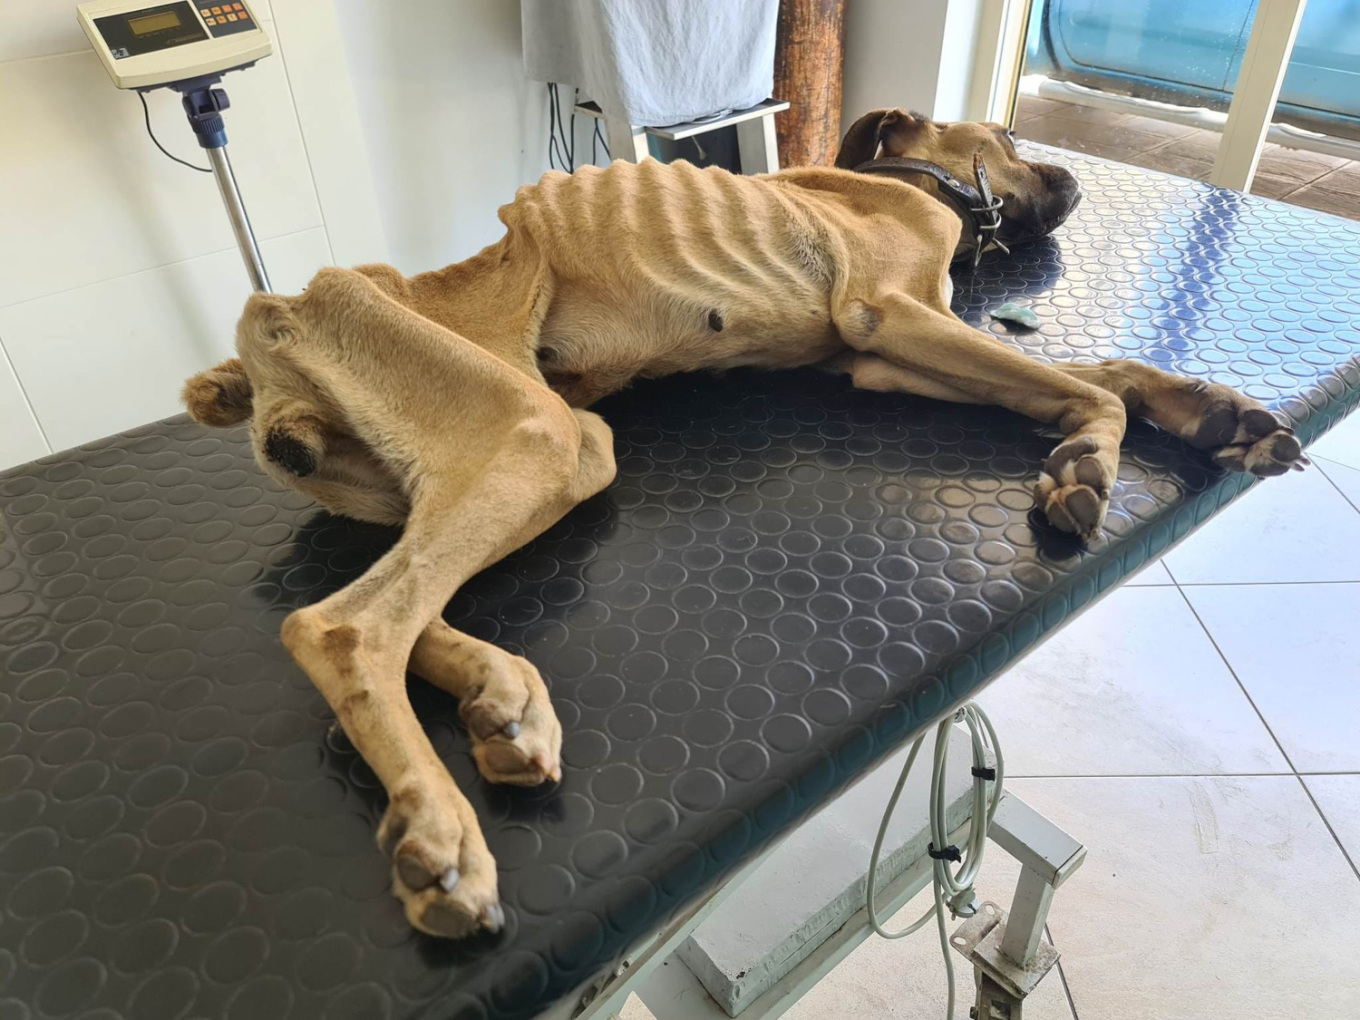 Ηλεία: Σε κρίσιμη κατάσταση ο σκύλος που βρέθηκε σκελετωμένος και αλυσοδεμένος – Έχει εξαντληθεί από την ασιτία